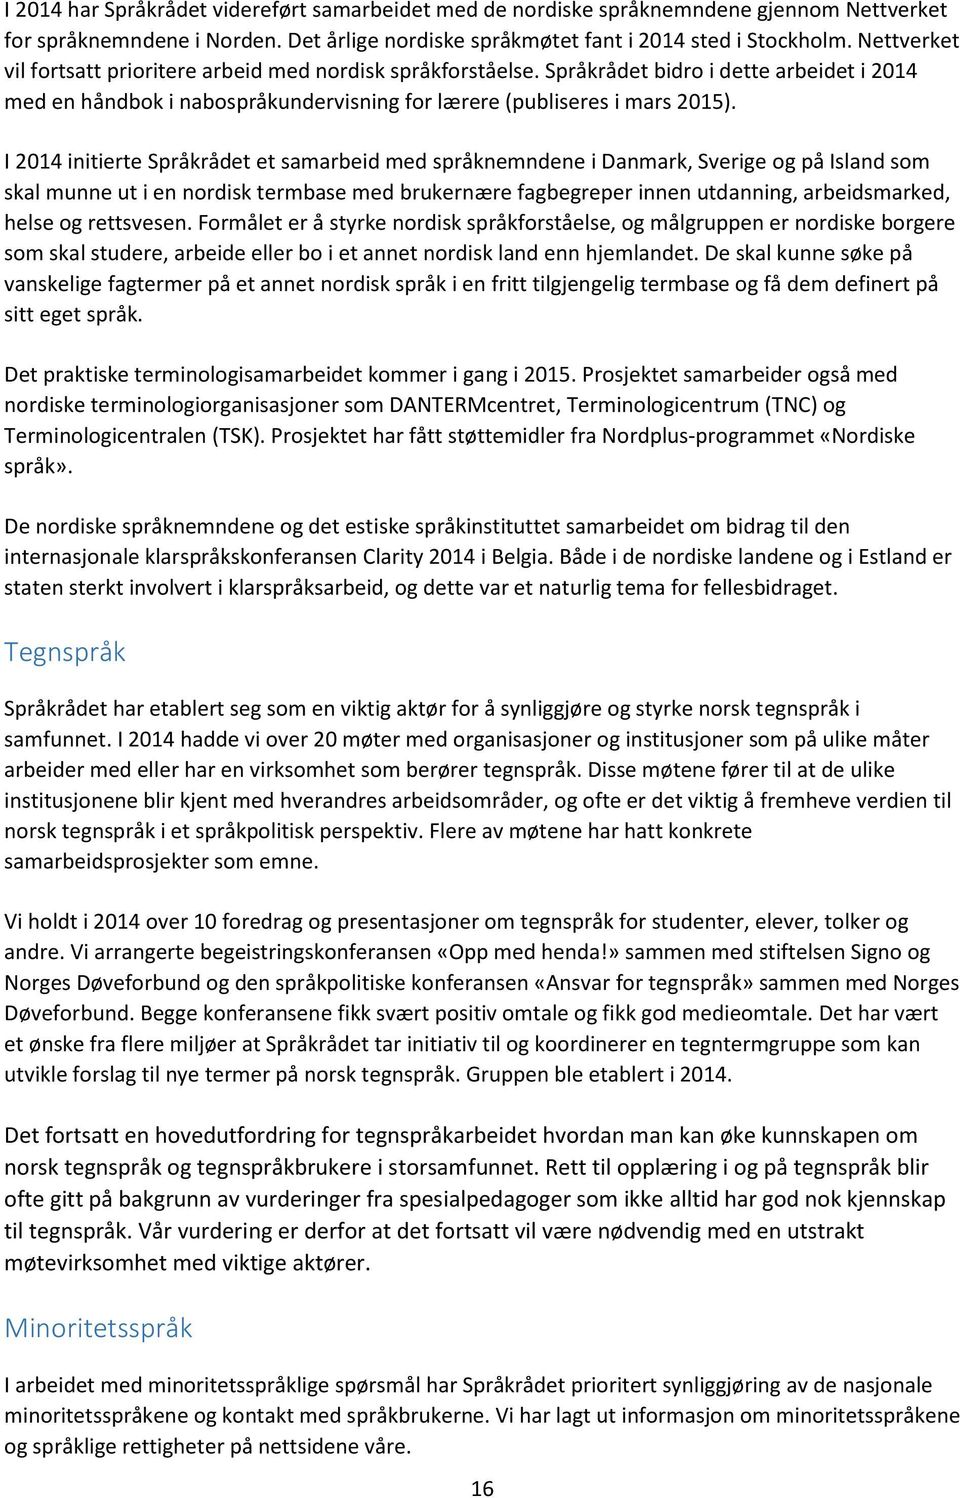 I 2014 initierte Språkrådet et samarbeid med språknemndene i Danmark, Sverige og på Island som skal munne ut i en nordisk termbase med brukernære fagbegreper innen utdanning, arbeidsmarked, helse og